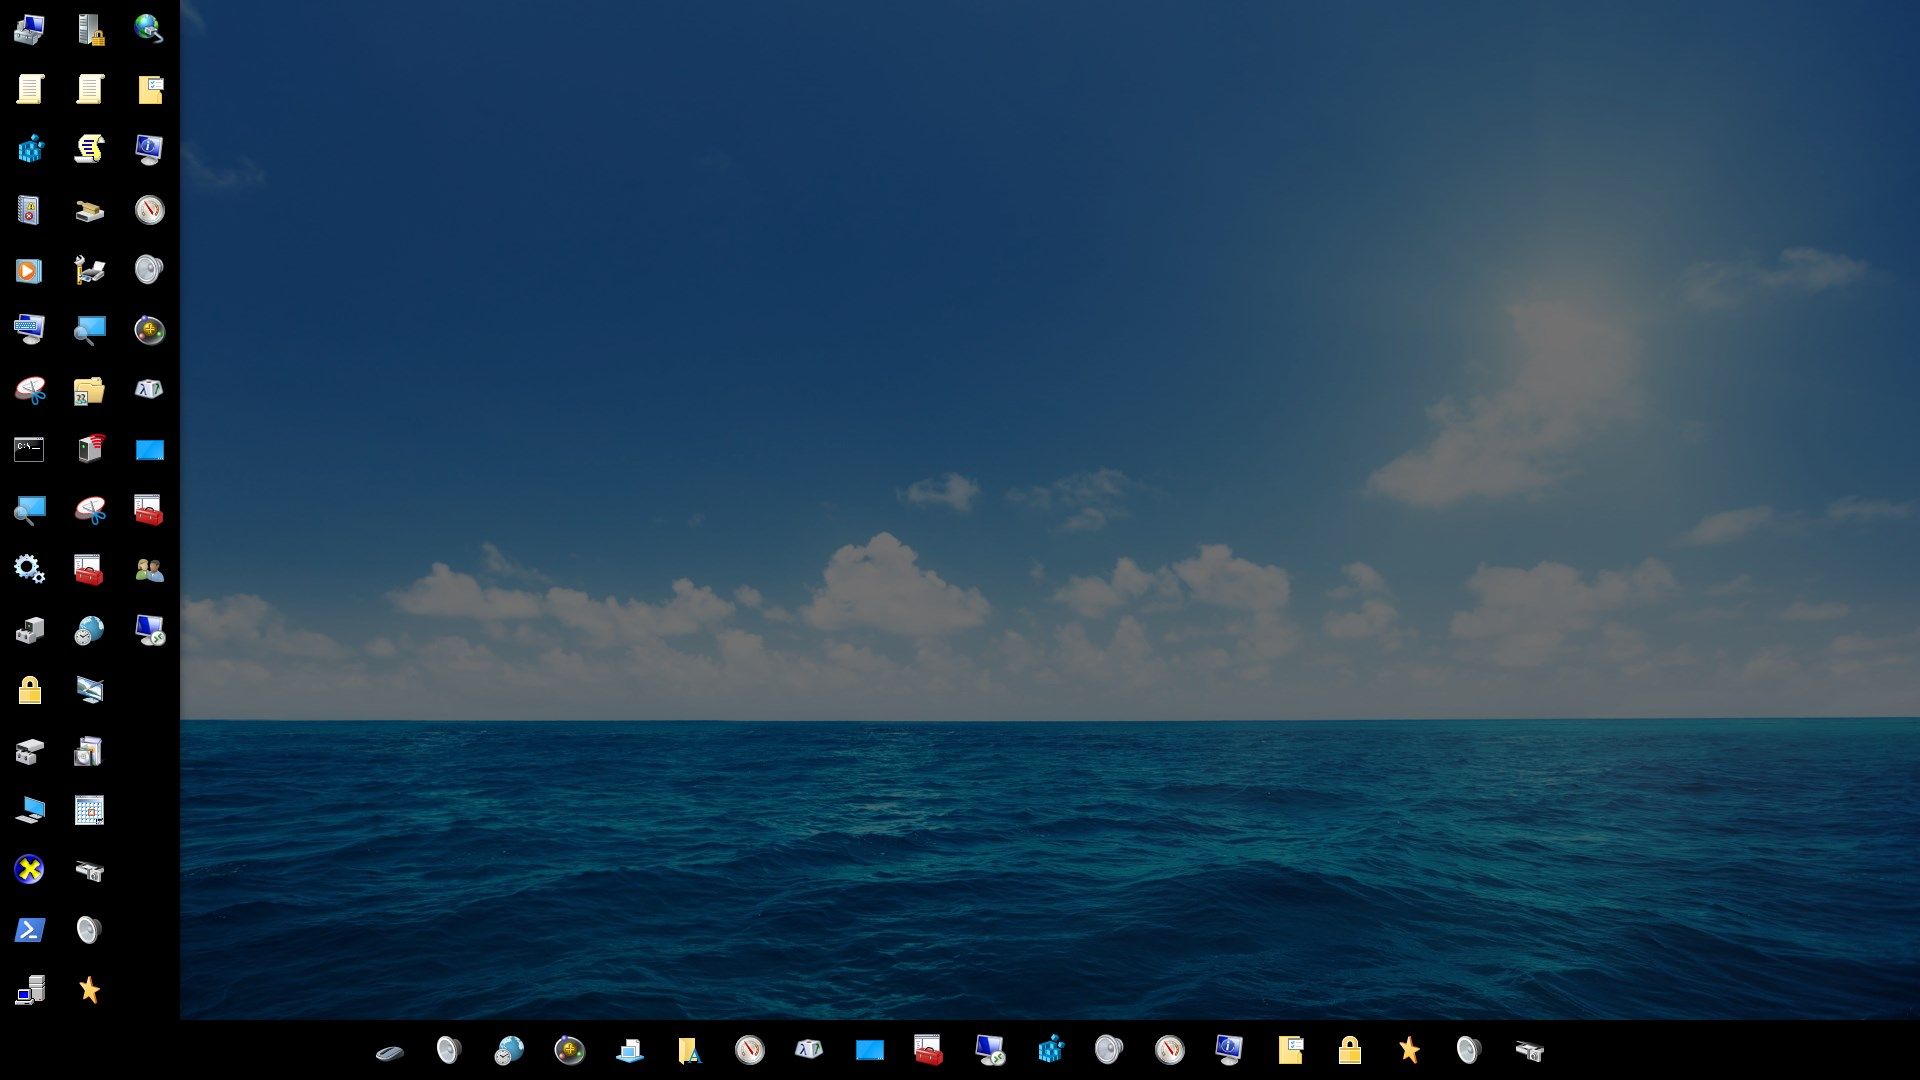 Extend Desktop